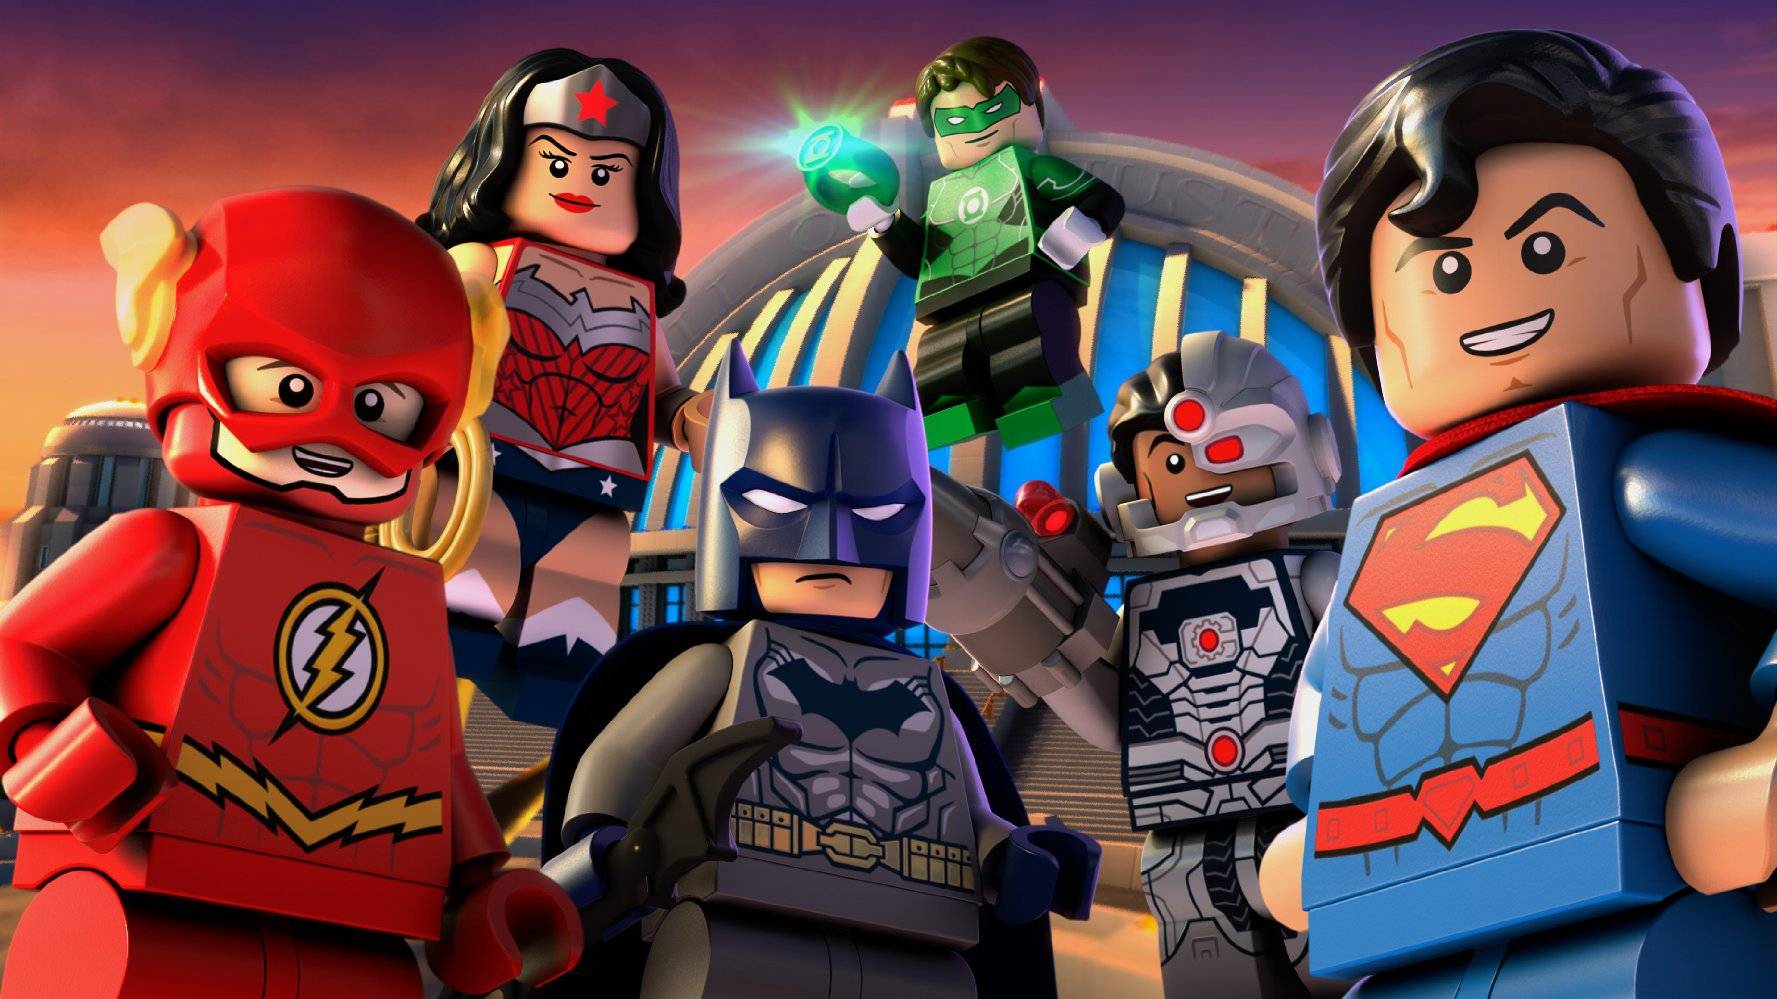 Lego DC Comics Super Heroes: Justice League - Cosmic Clash / Lego DC Comics Super Heroes: Justice League - Cosmic Clash (2016)